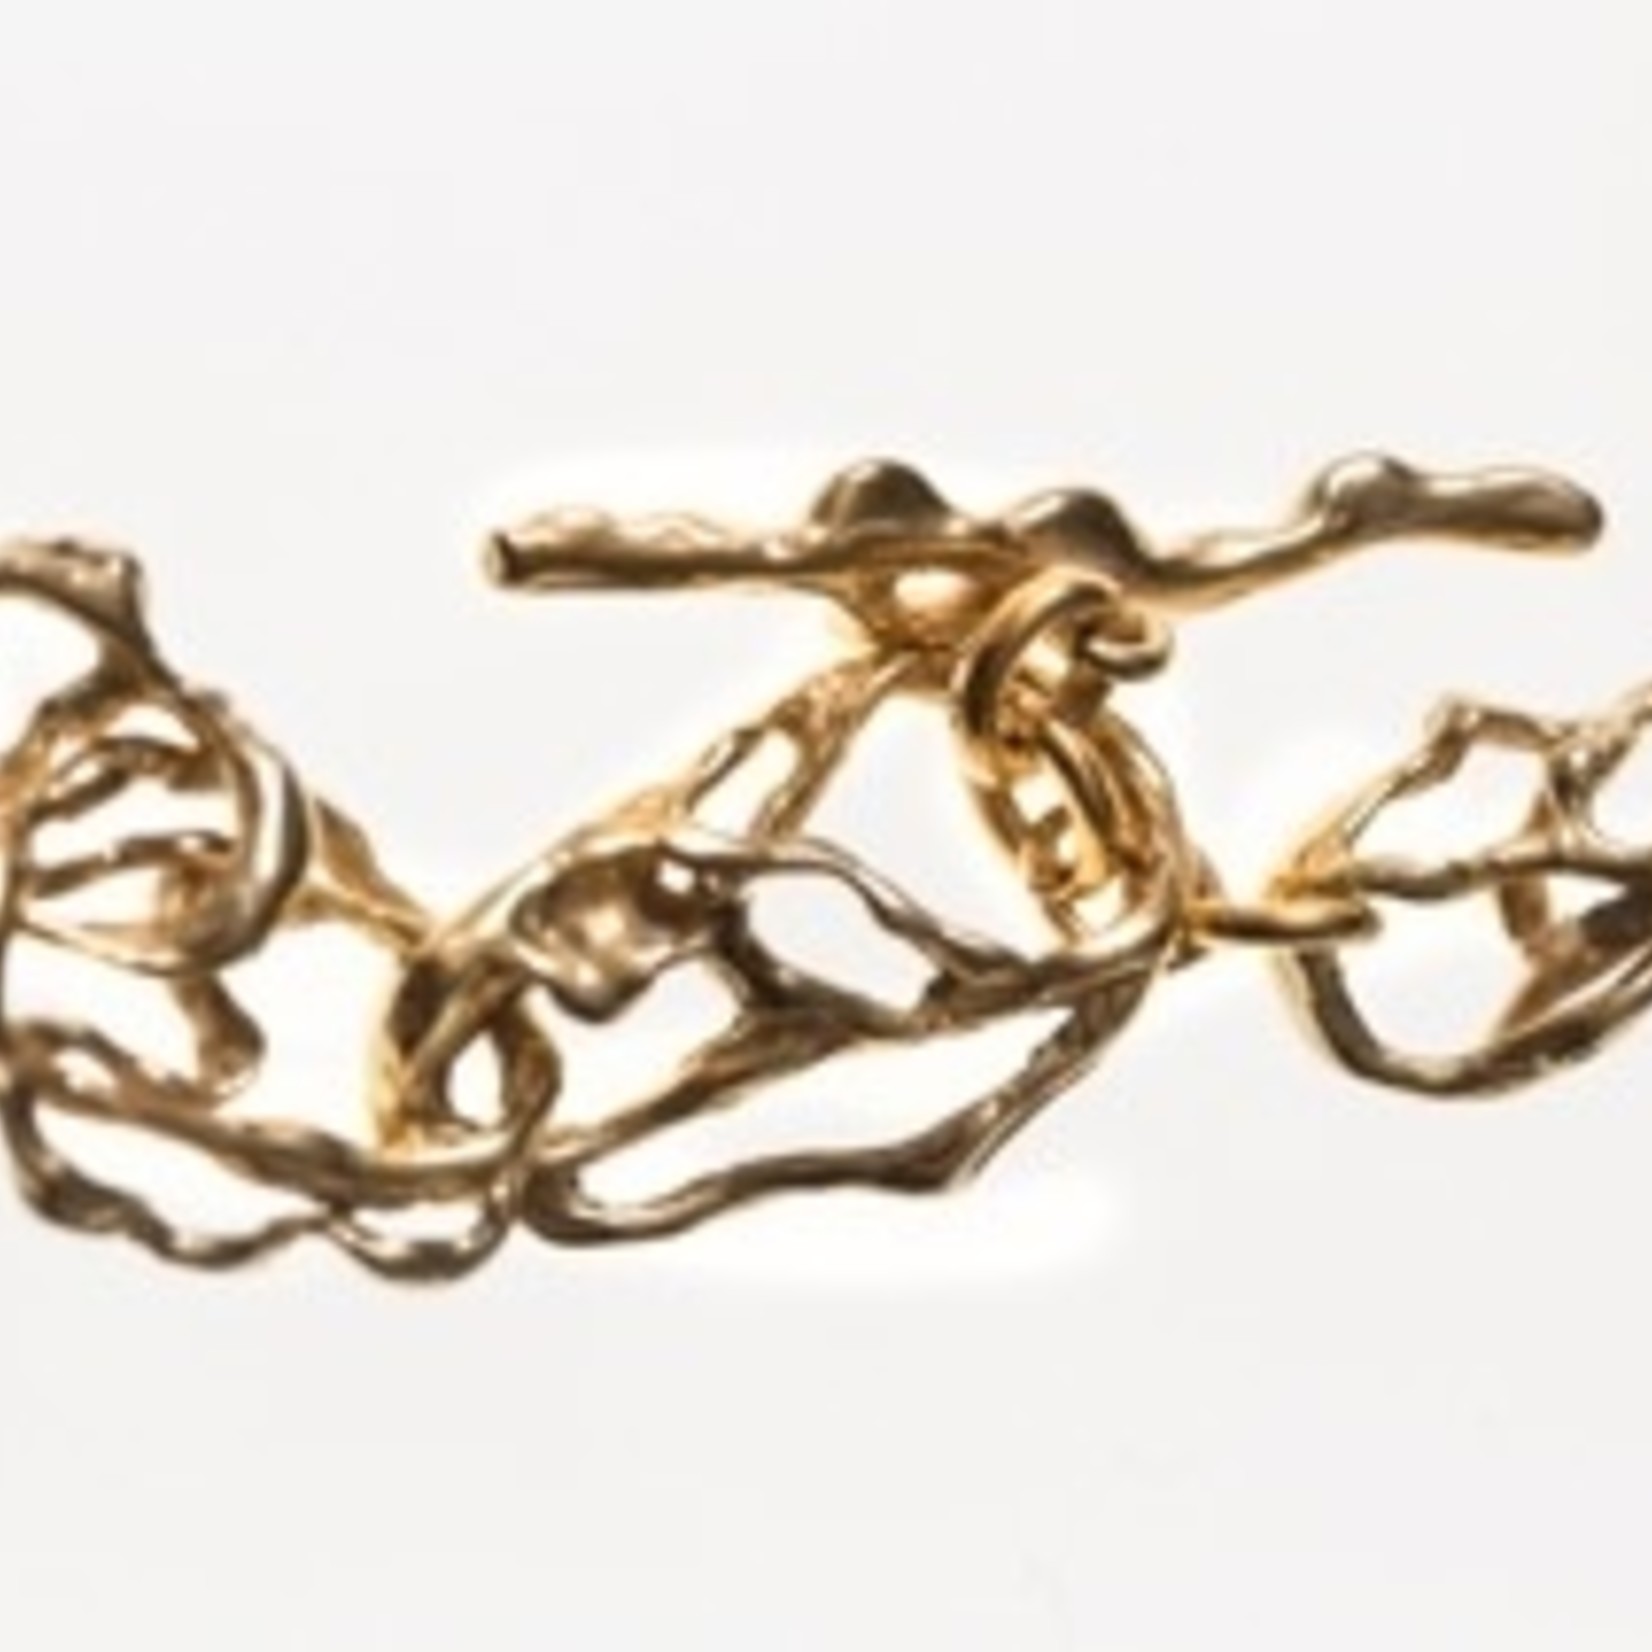 TEGO Liquid golden bracelet